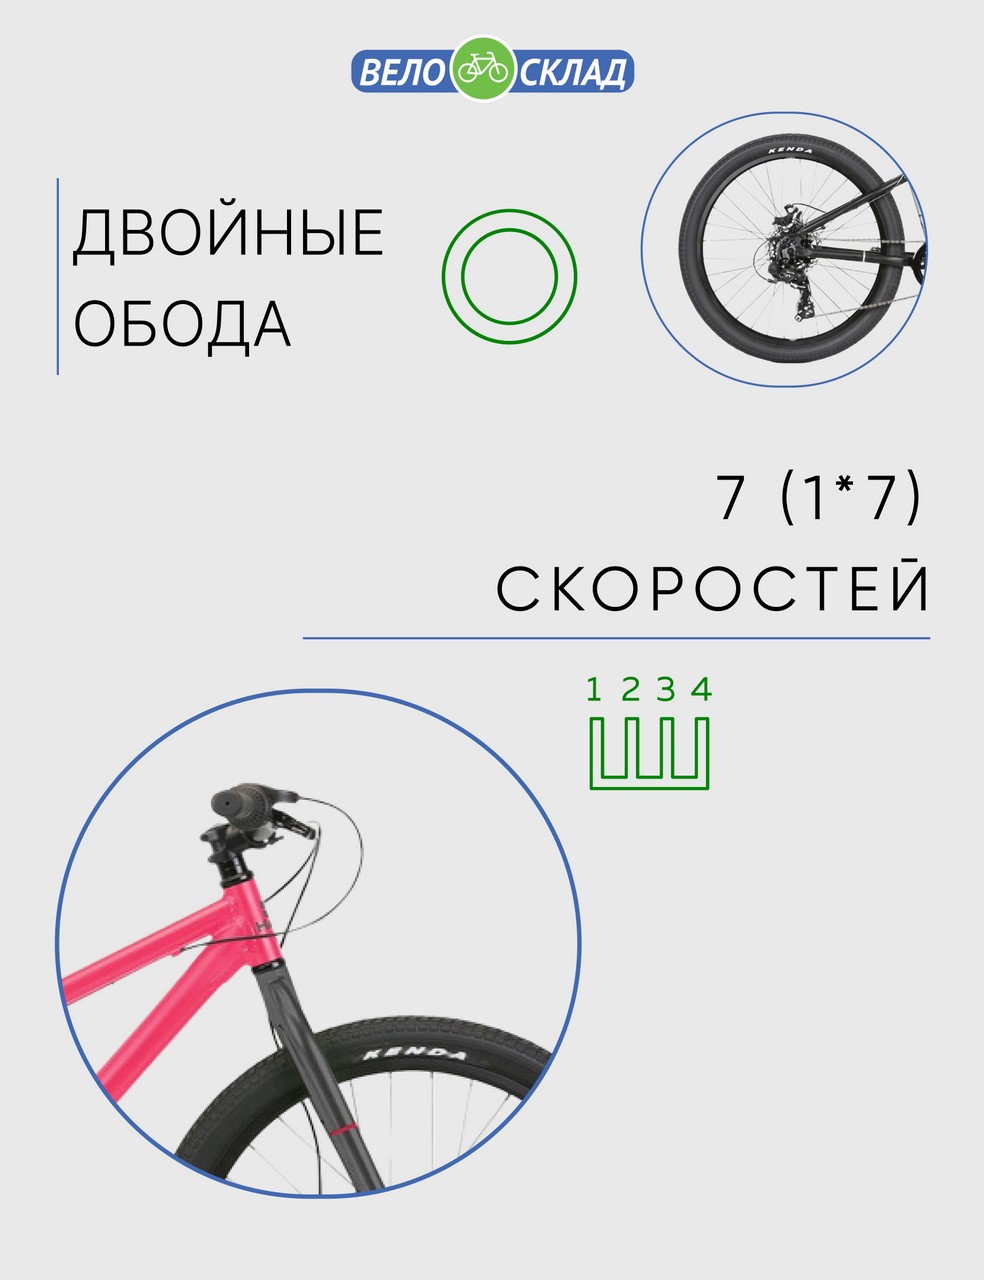 Подростковый велосипед Haro Beasley 26, год 2021, цвет Розовый-Черный, ростовка 13